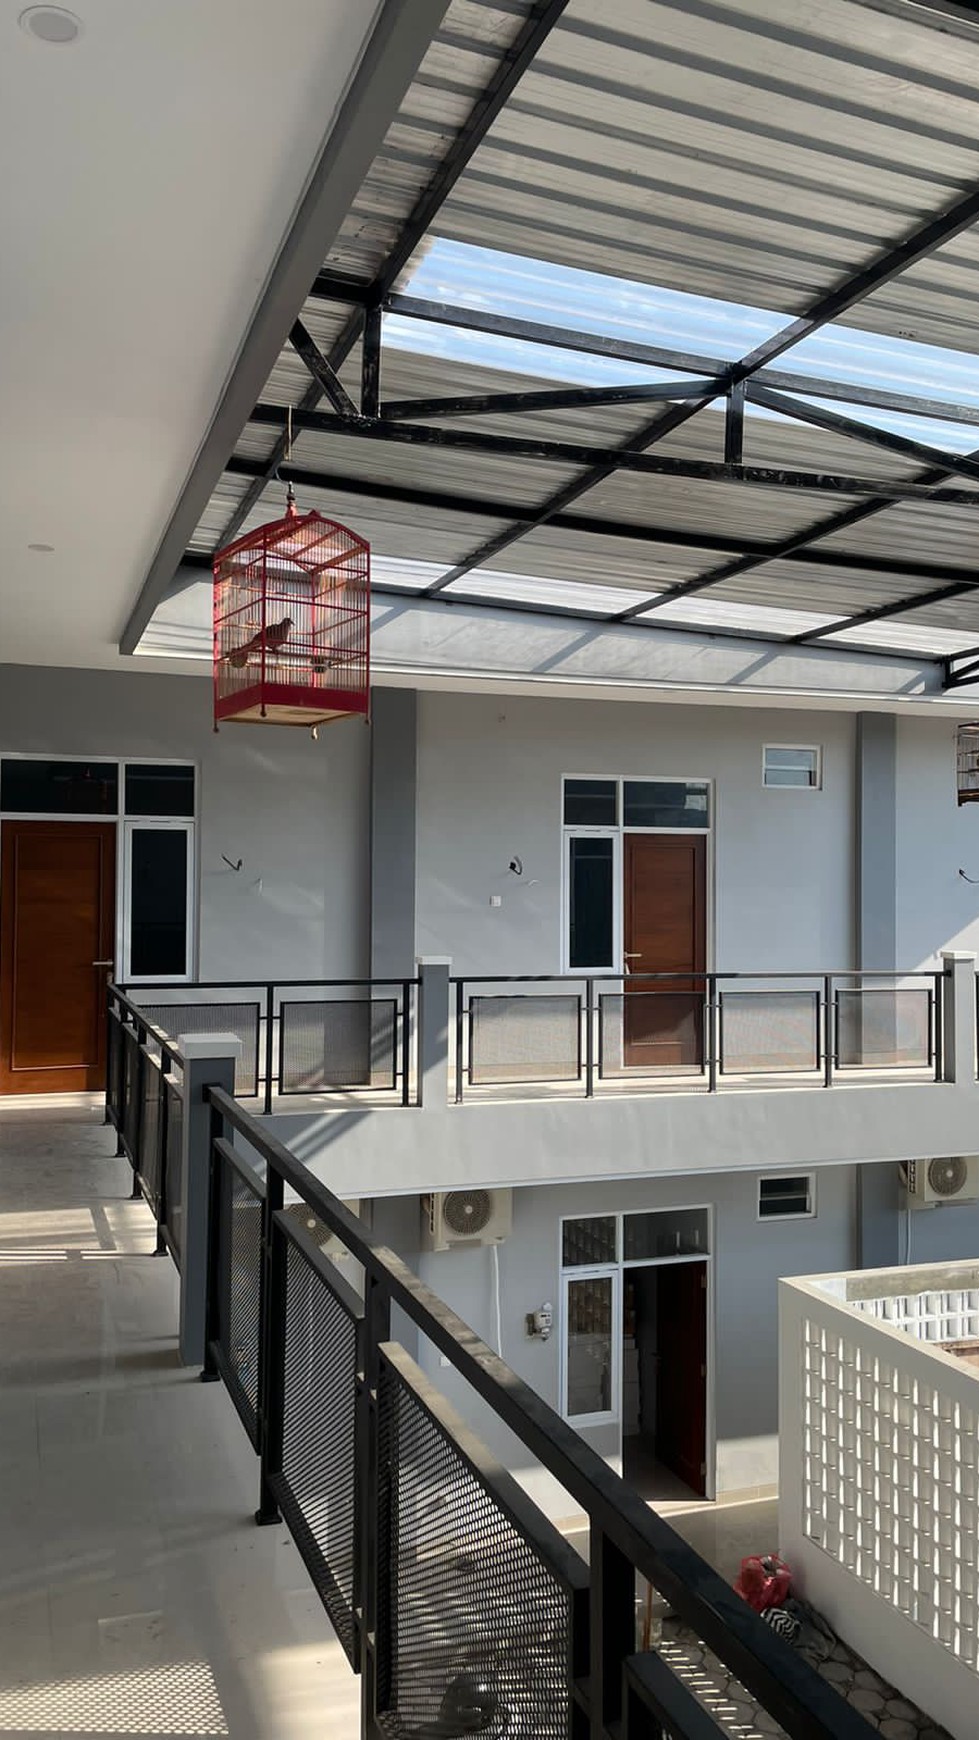 Rumah Kost Dekat Kampus UGM Yogyakarta